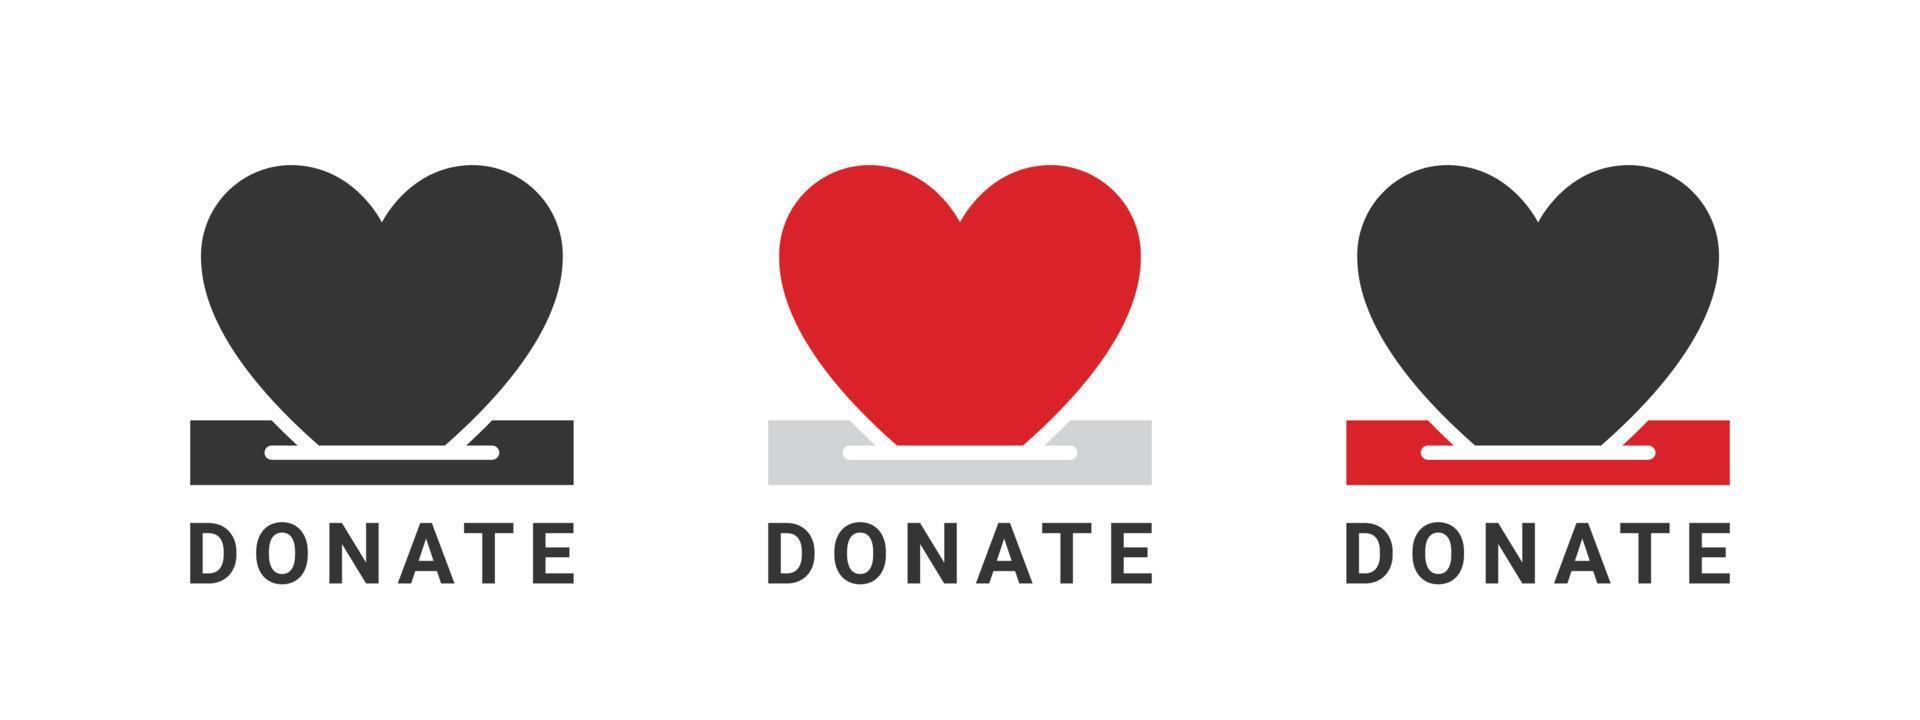 iconos de donación. insignias de donación de corazones. iconos de caridad. signos relacionados con las donaciones. ilustración vectorial vector